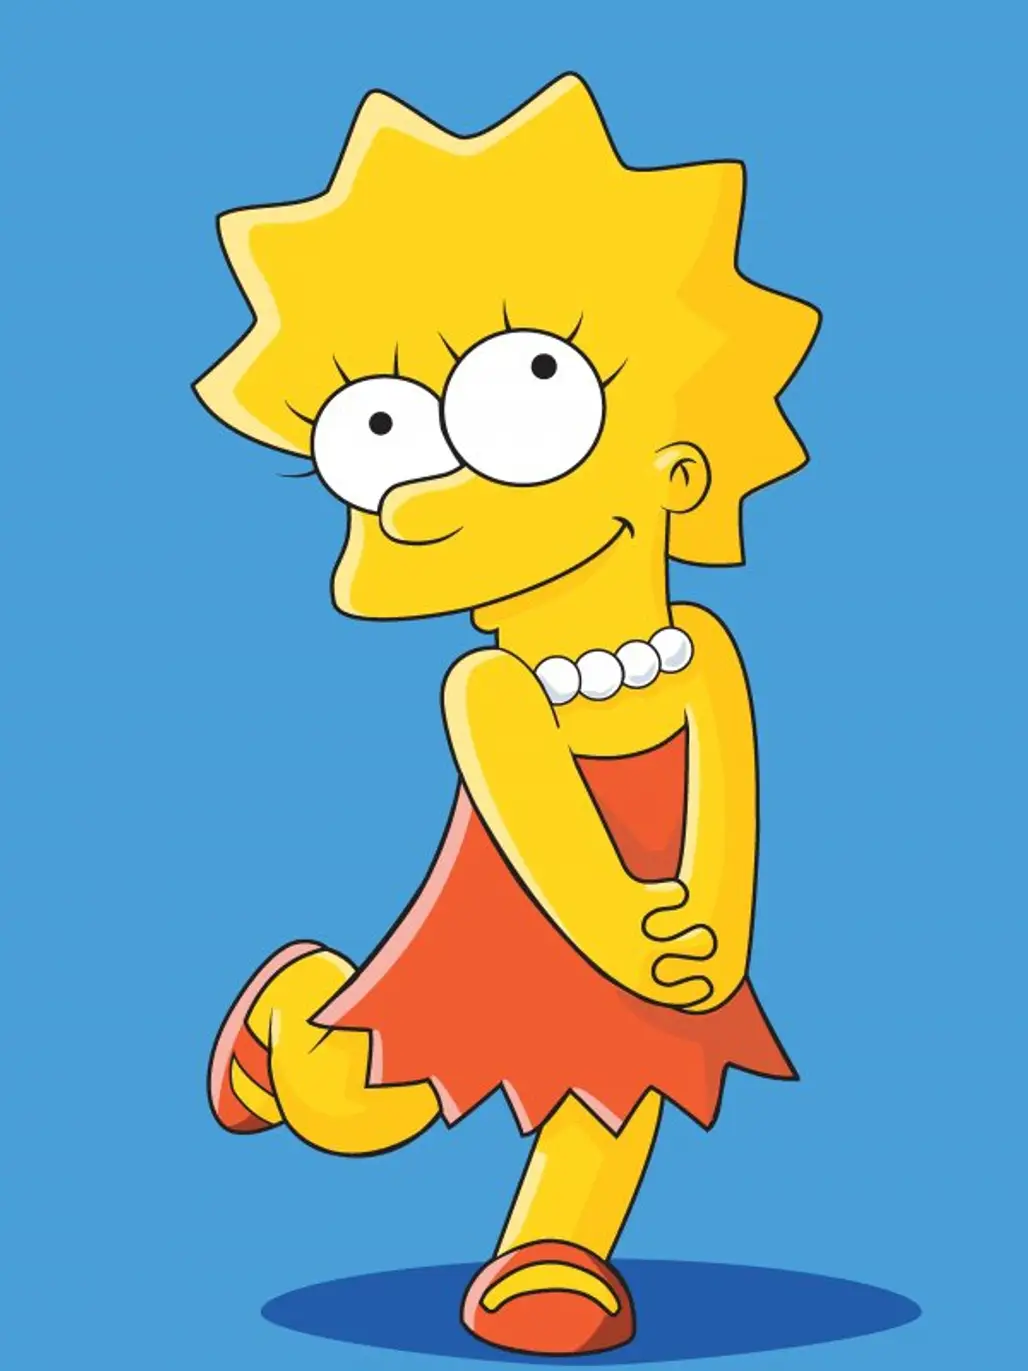 Lisa Simpson (the Simpsons)